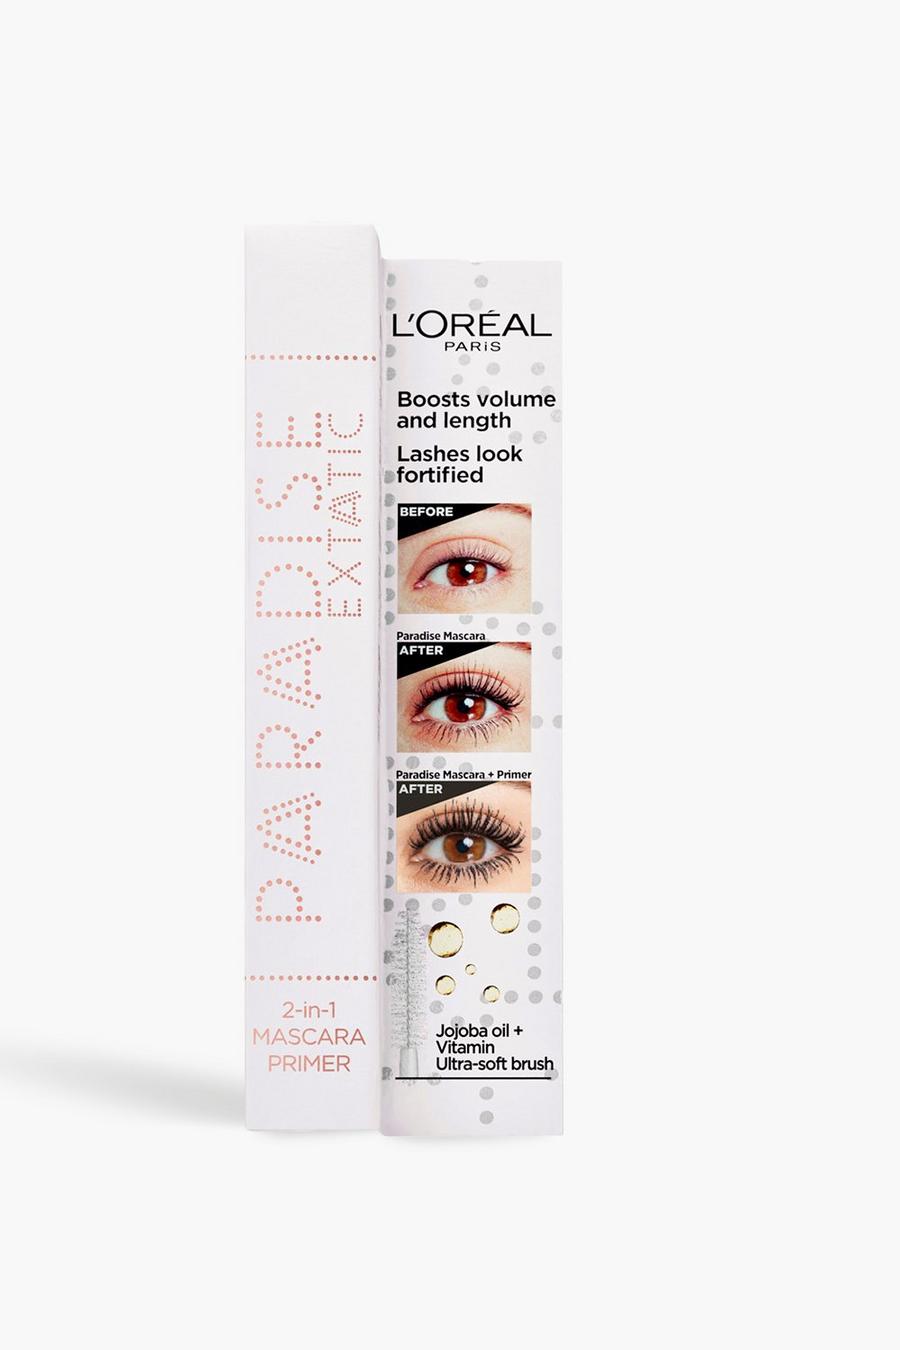 Clear transparent L'Oréal Paris Paradise Mascara Primer, suitable for sensitive eyes